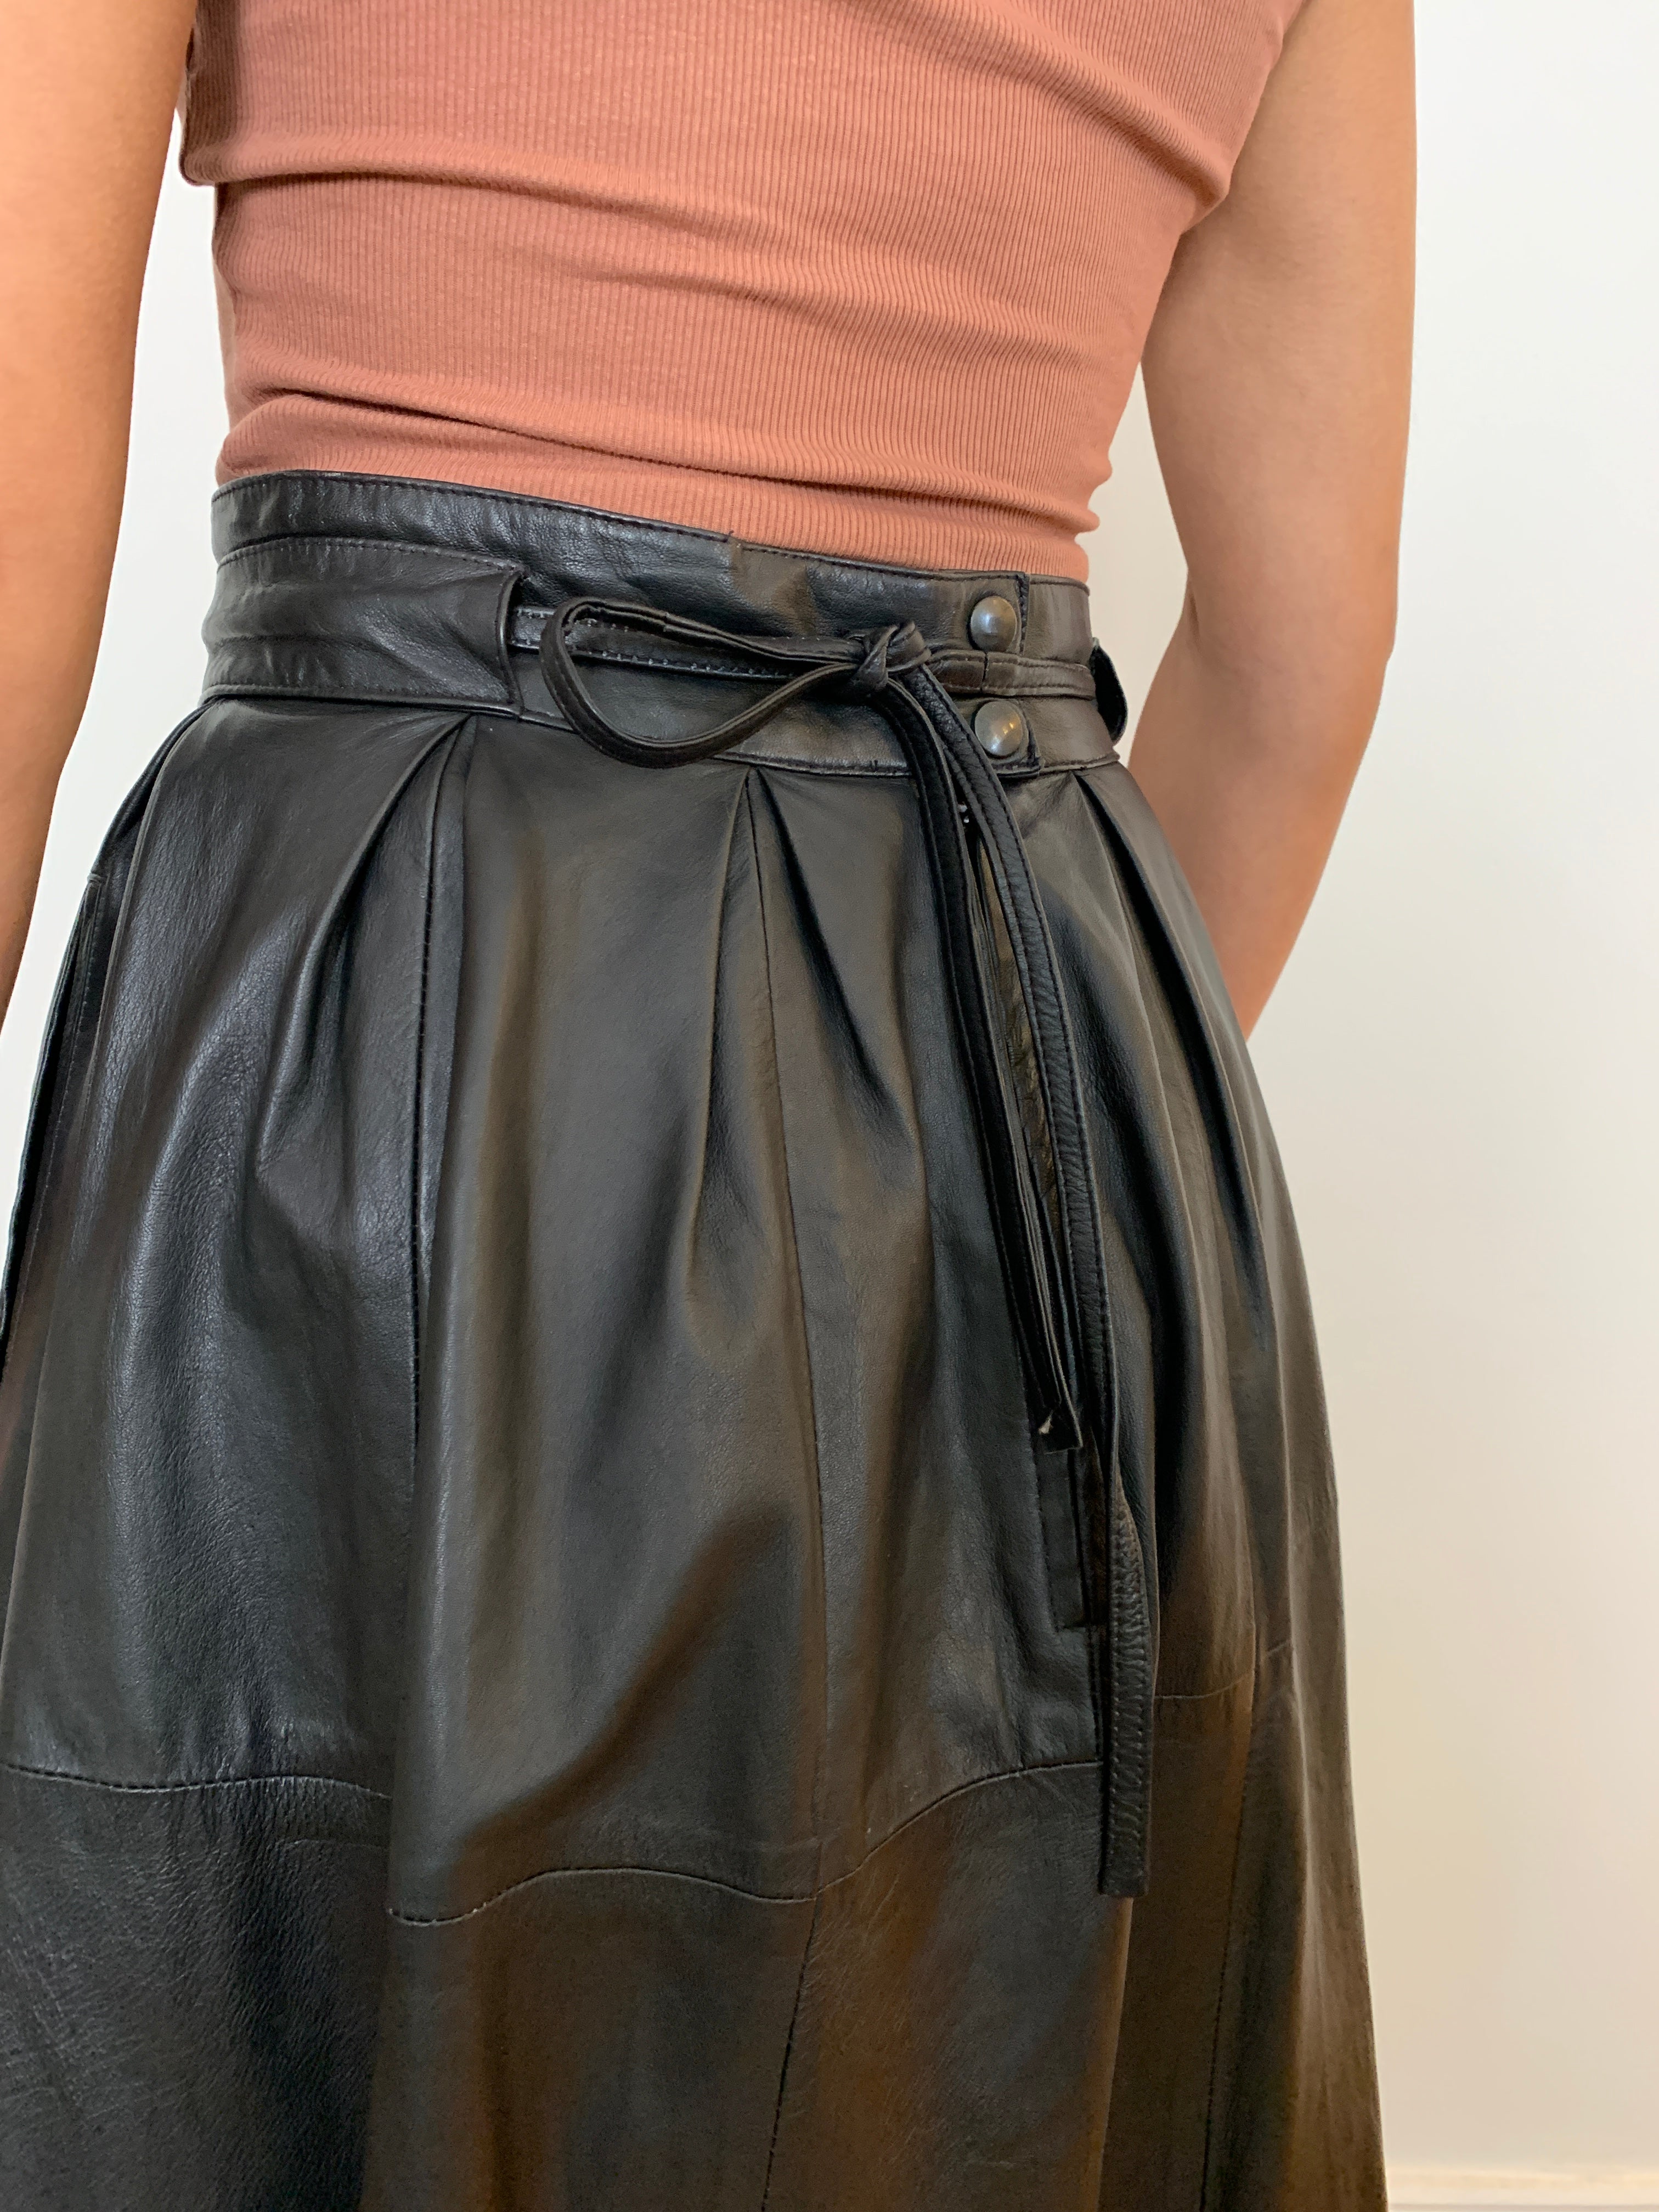 Vintage 1980s full leather skirt